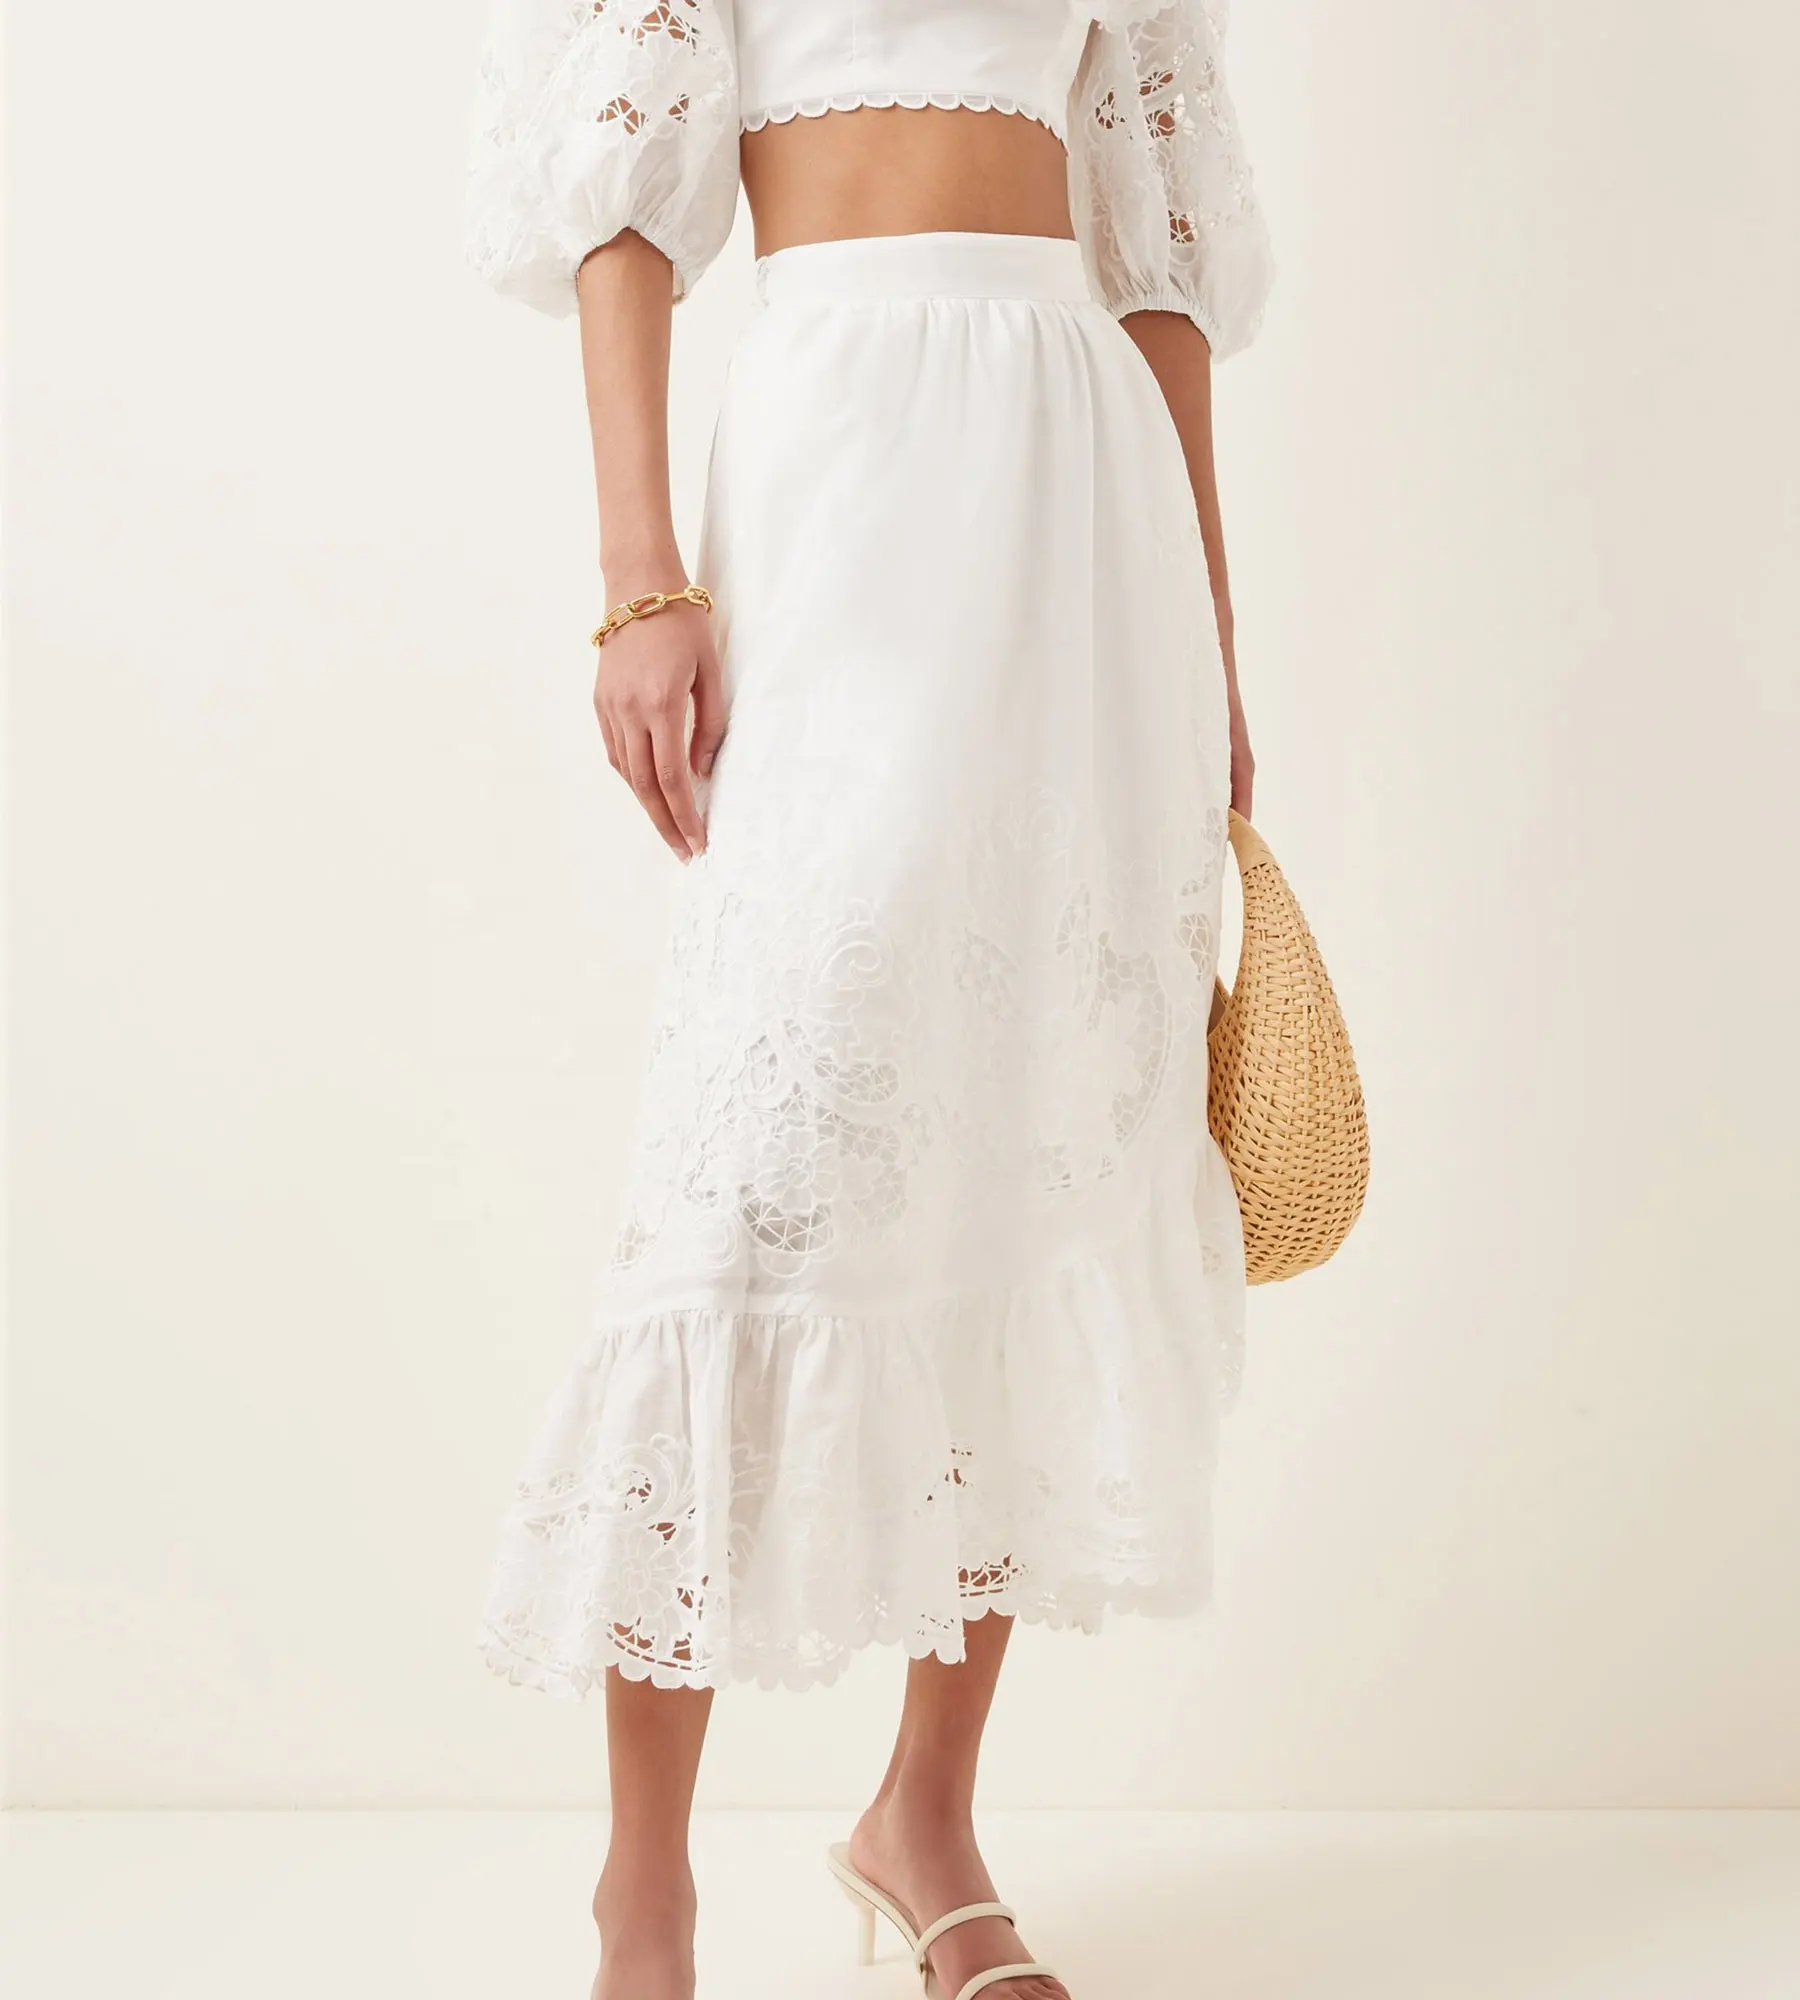 Neueste Stil koreanische Kleider neue Mode Dame weiße Spitze getrimmt Baumwolle Wrap fantastischen langen Rock